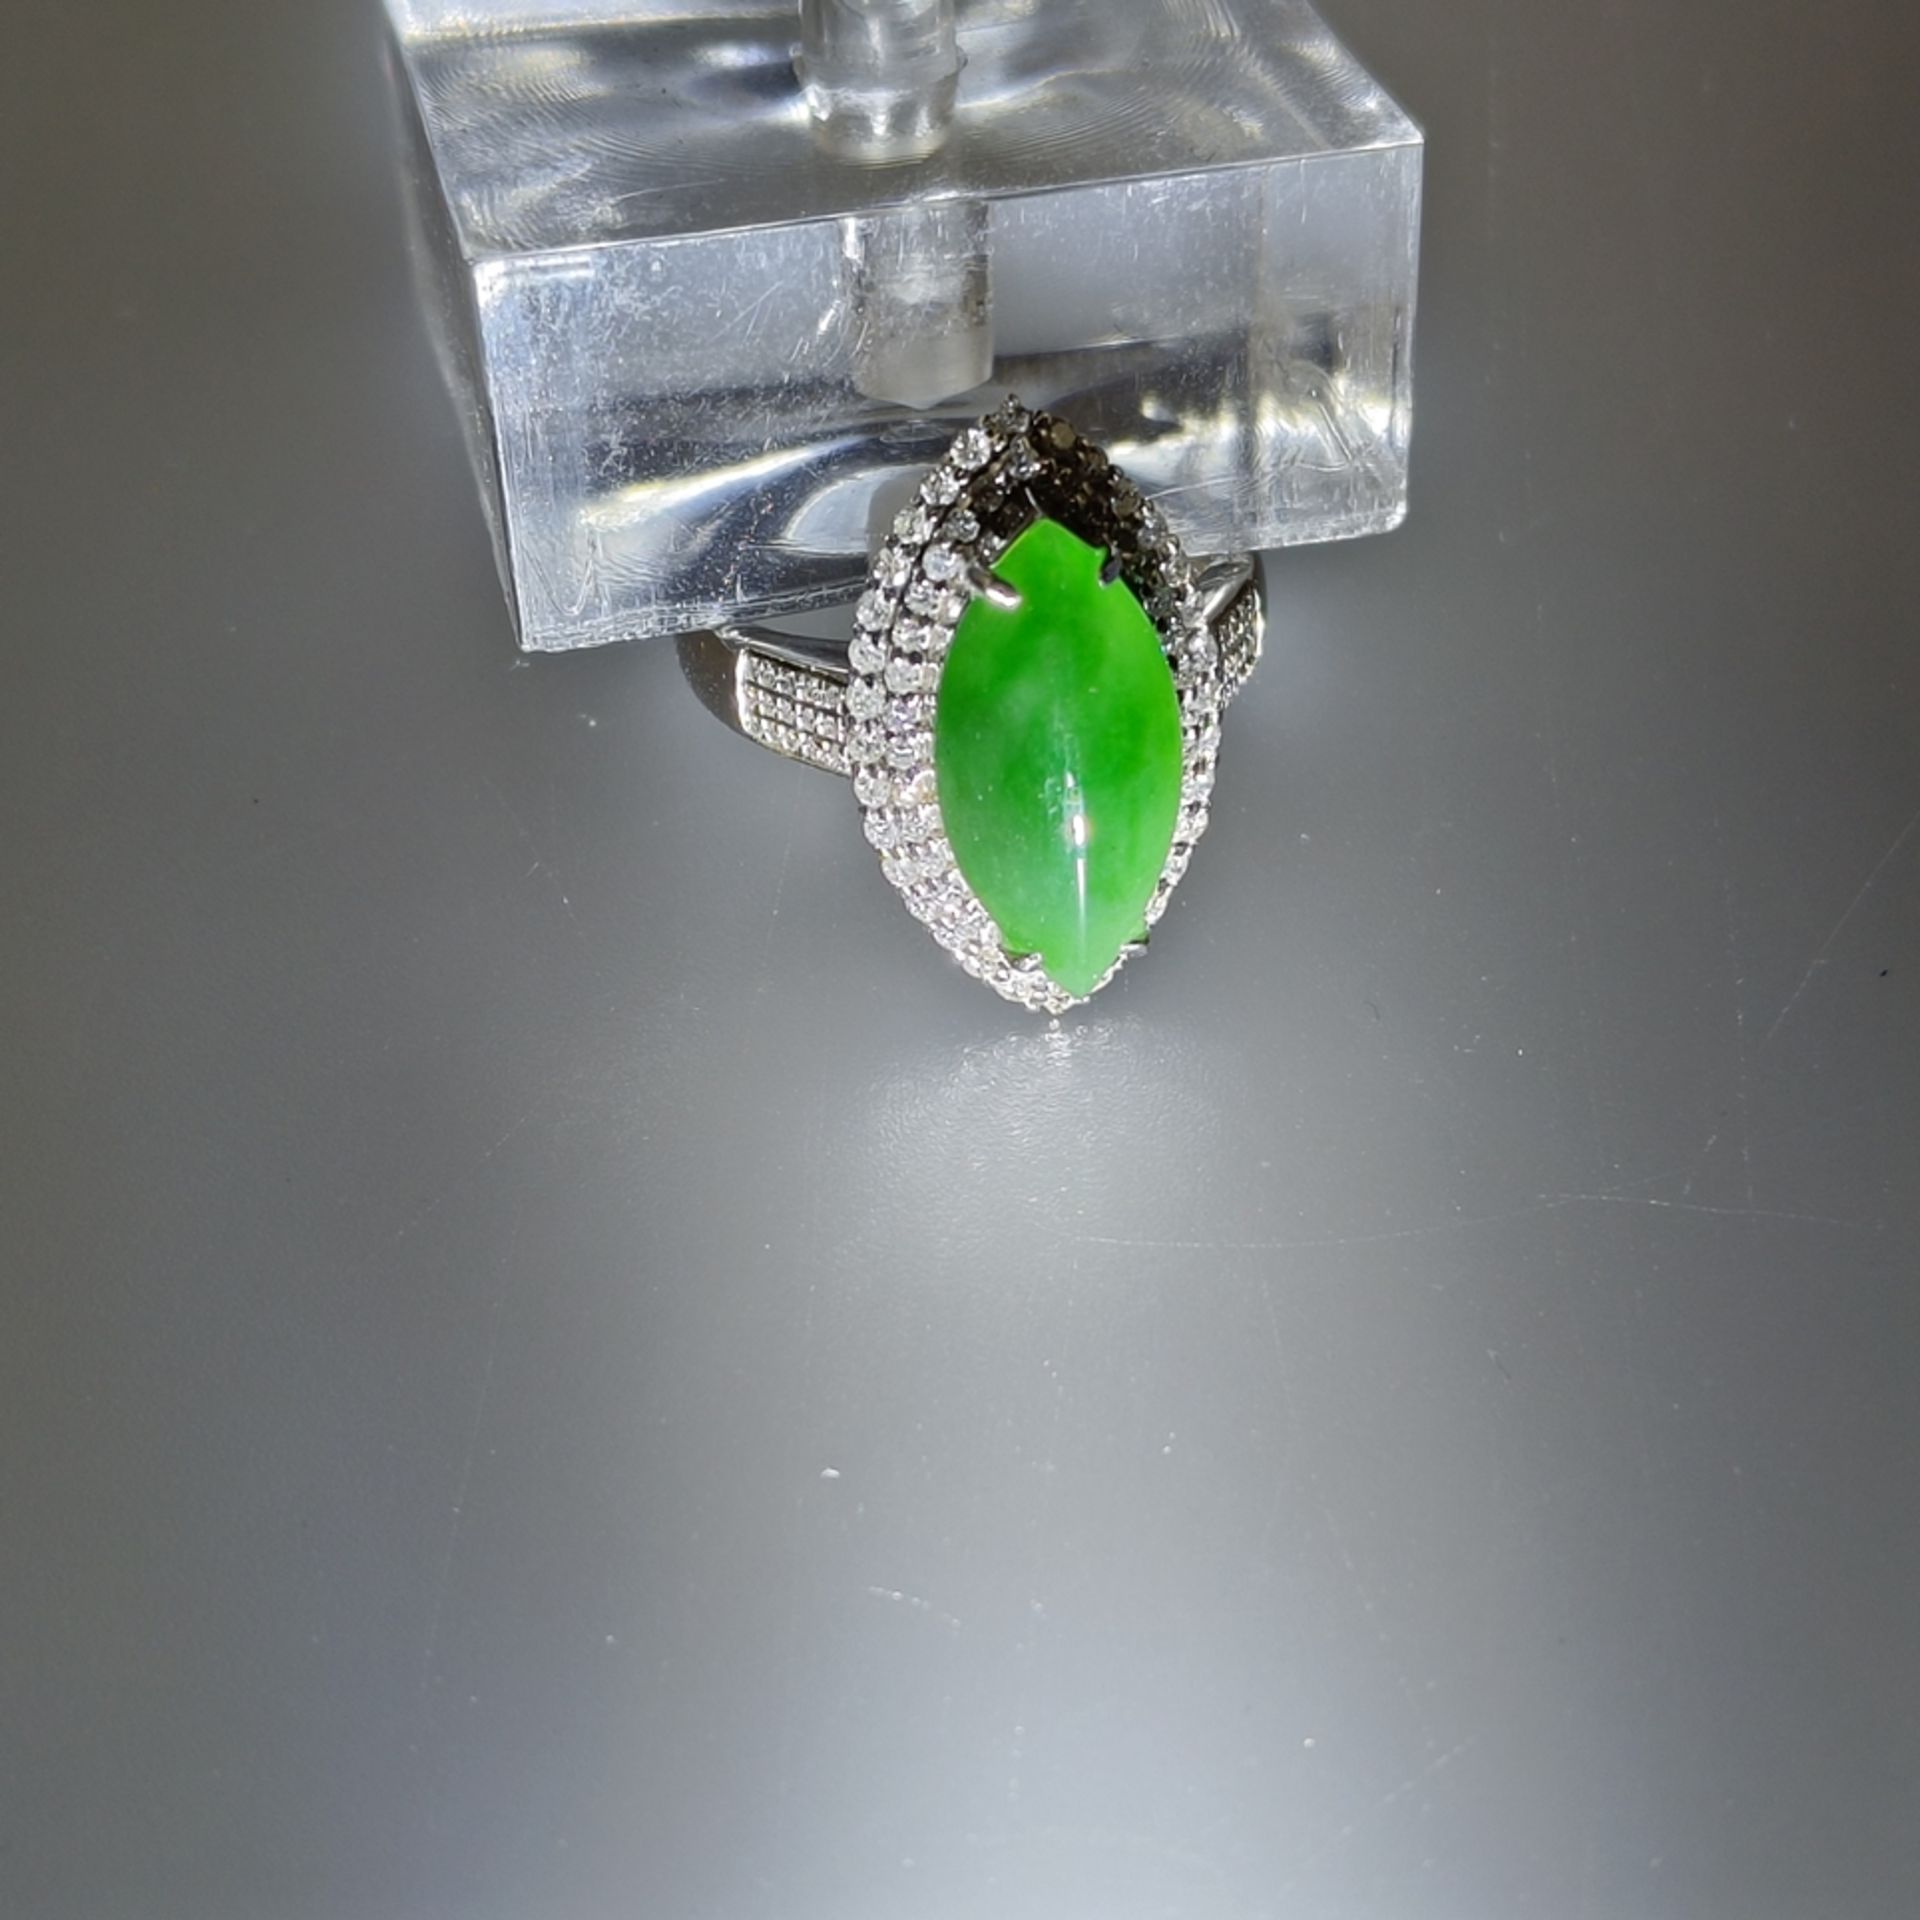 18K-Jadering mit Diamanten - Weißgold 750/000 (18K), navetteförmiger Ringkopf mit grüner Jade von c - Bild 7 aus 7